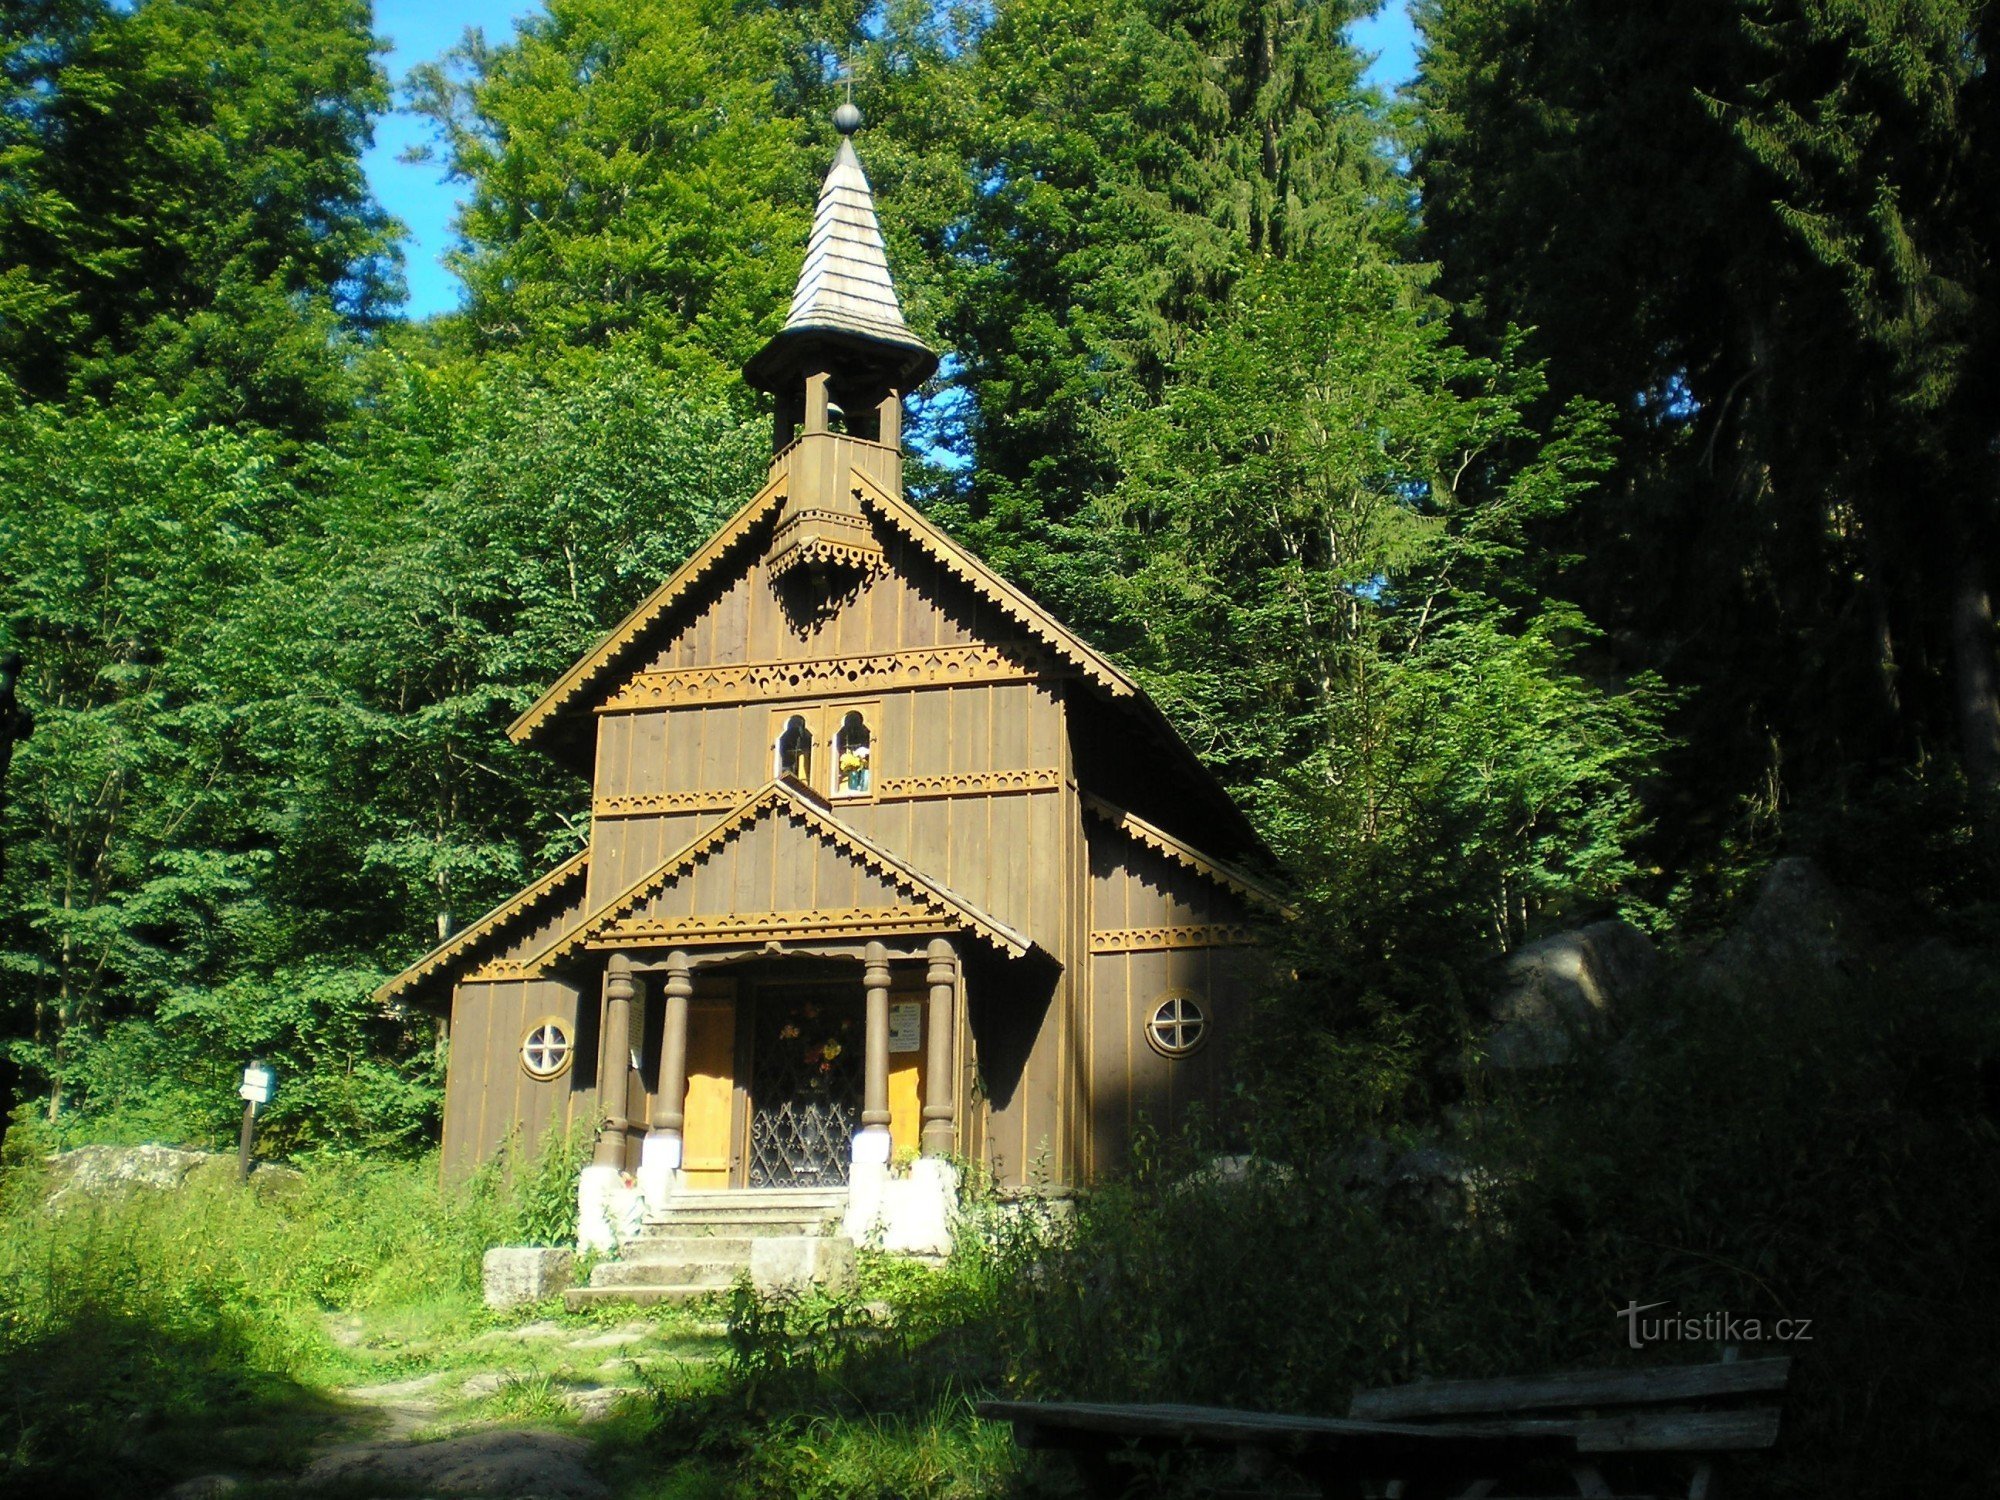 Stožecka chapel